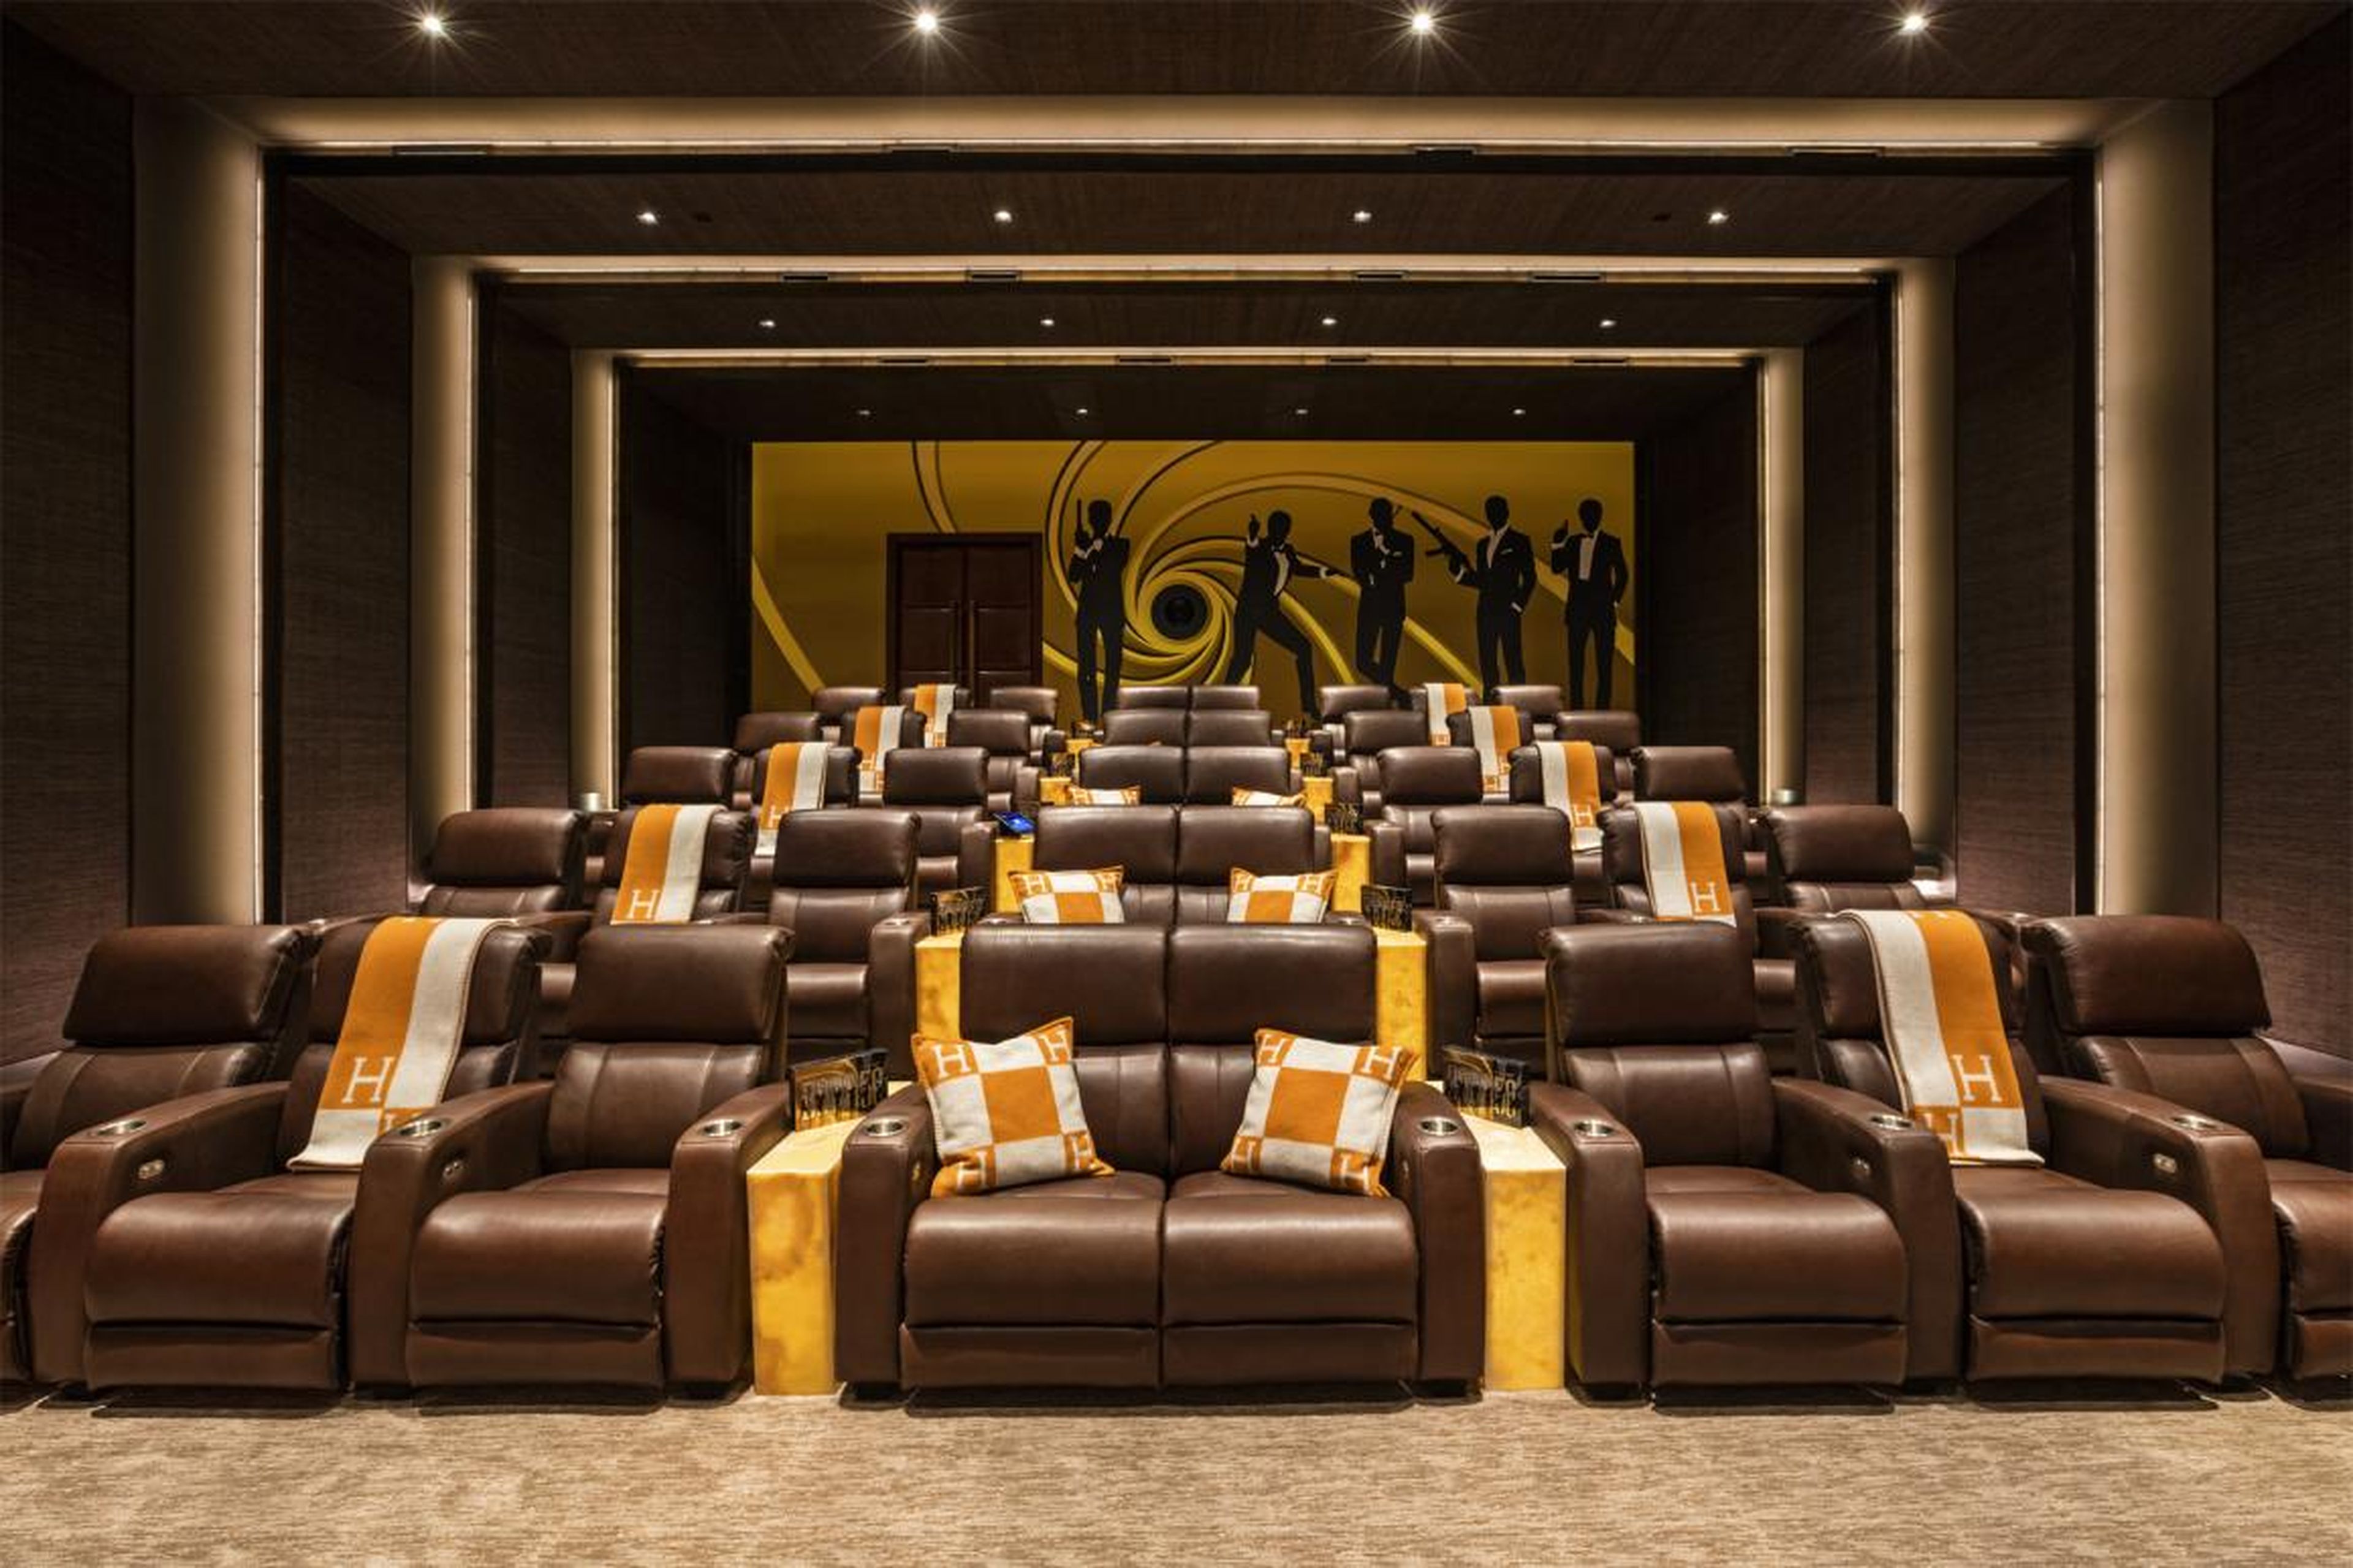 Realmente incomparables a la enorme sala de cine, que tiene espacio para 40 personas y su propio cartel de James Bond en la pared.